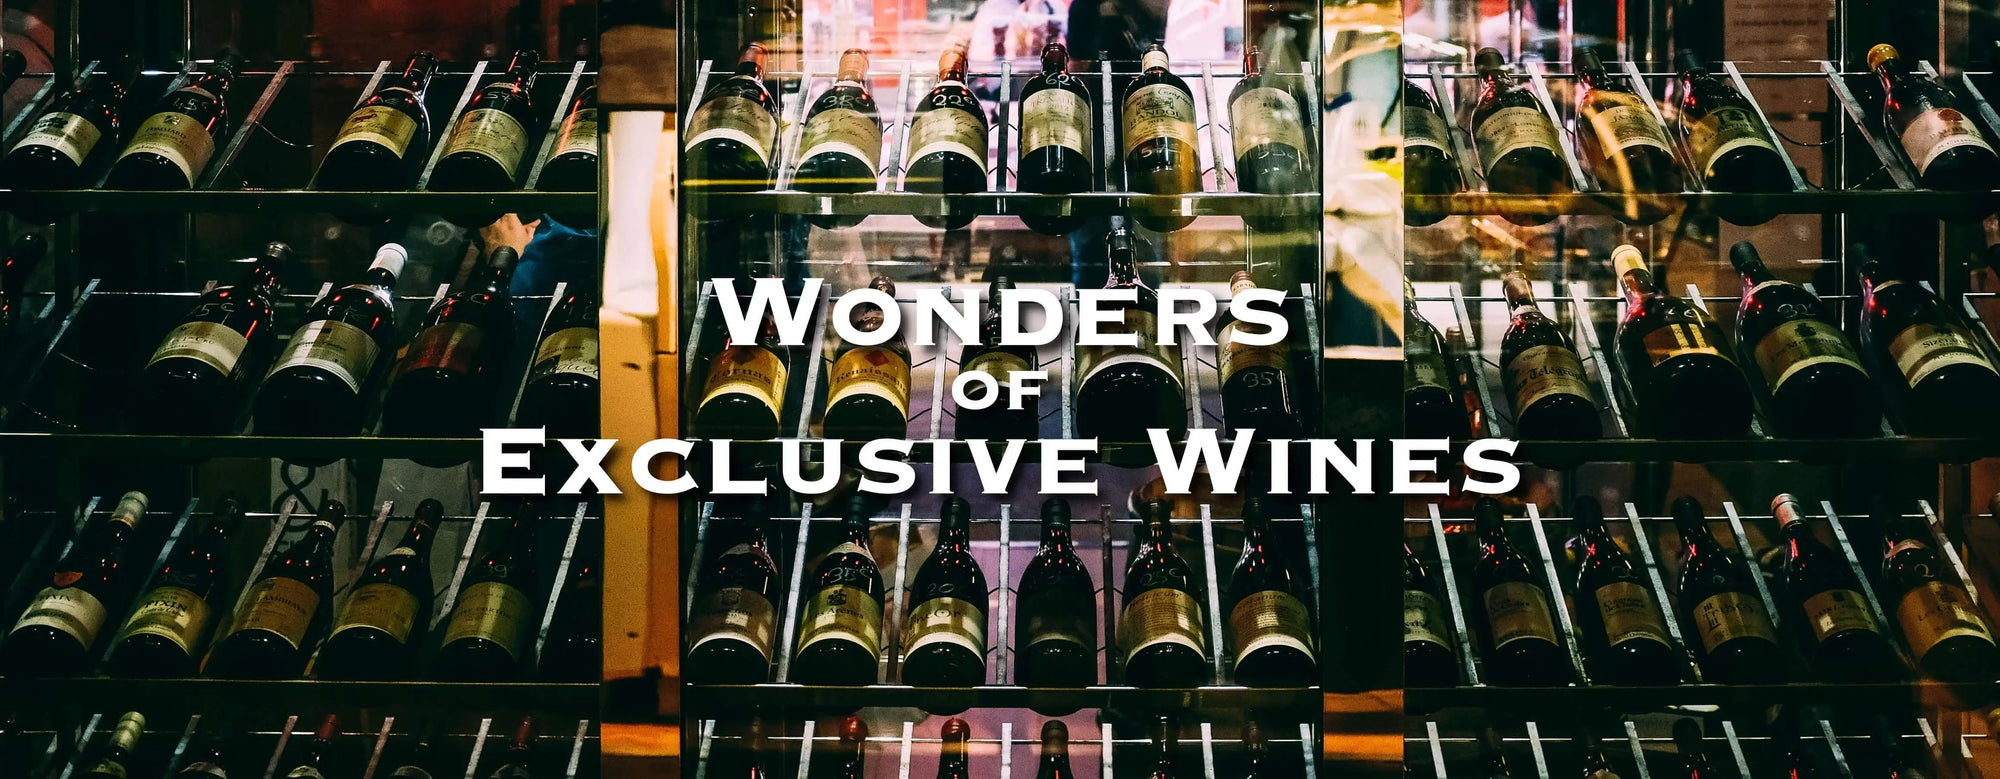 Wonders of Exclusive Wines